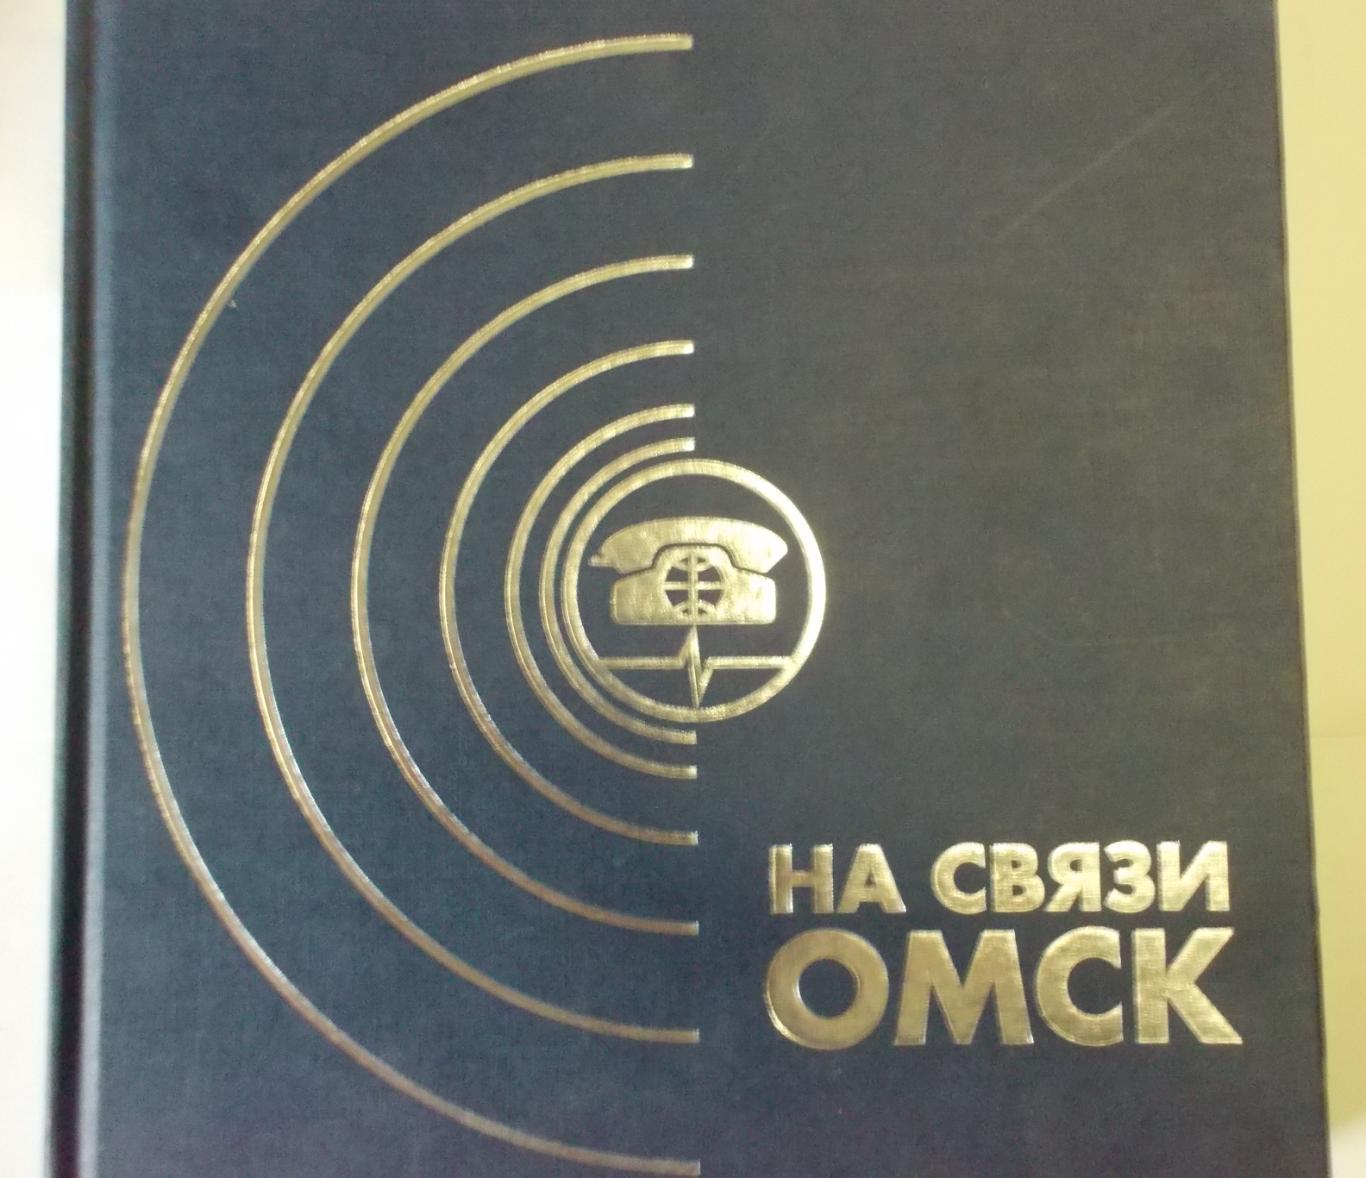 Книга На связи Омск, 2002 год издания. Доставка по России за счет продавца.